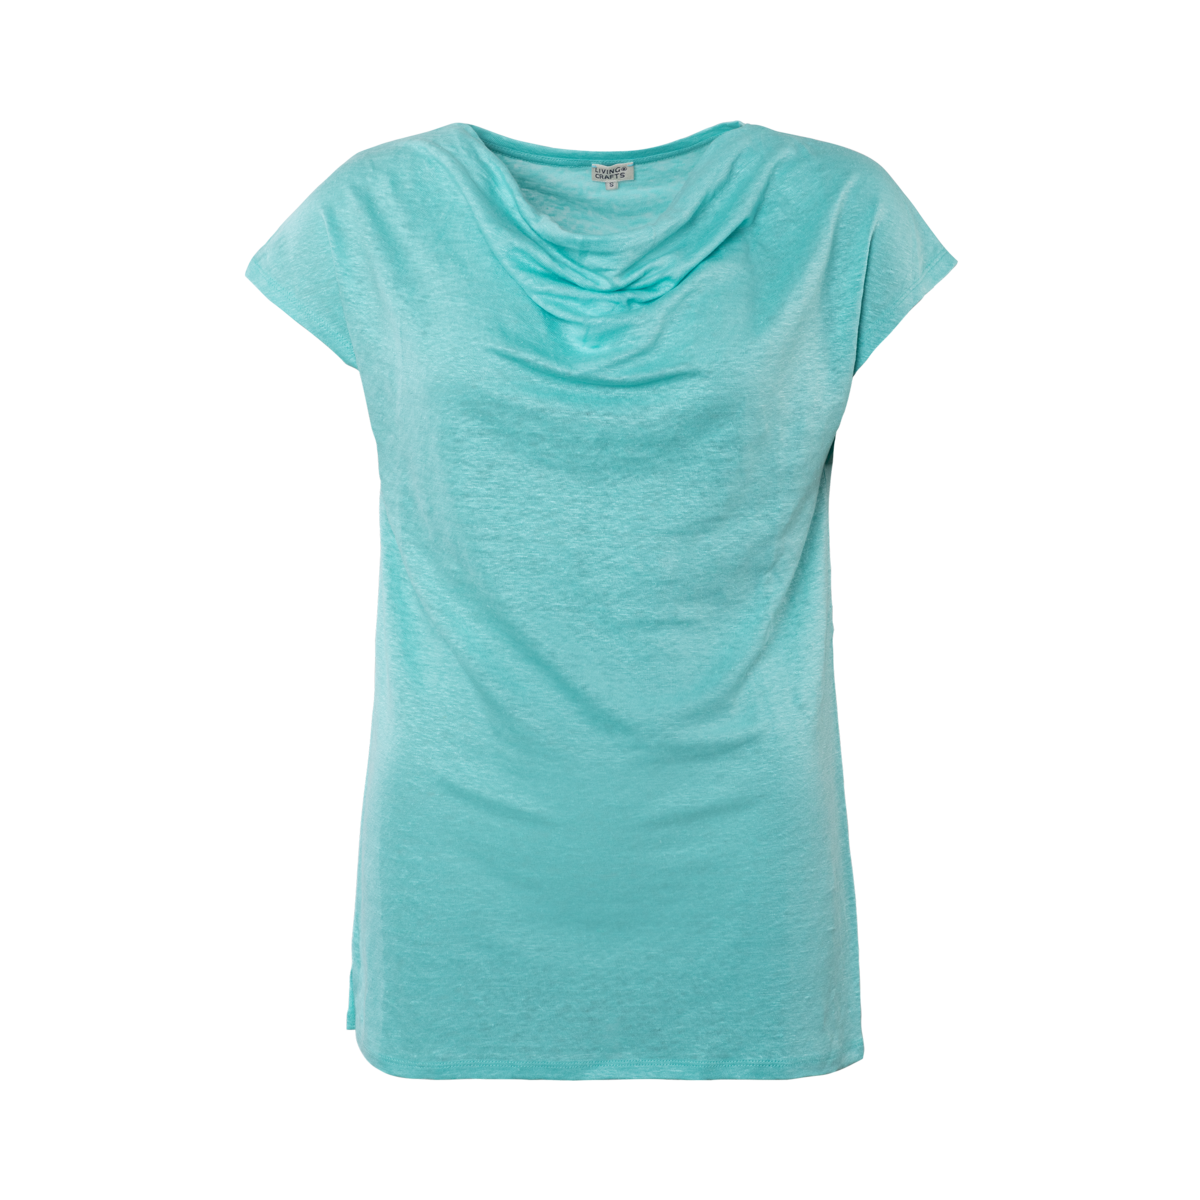 Turquoise T-shirt, GILKA